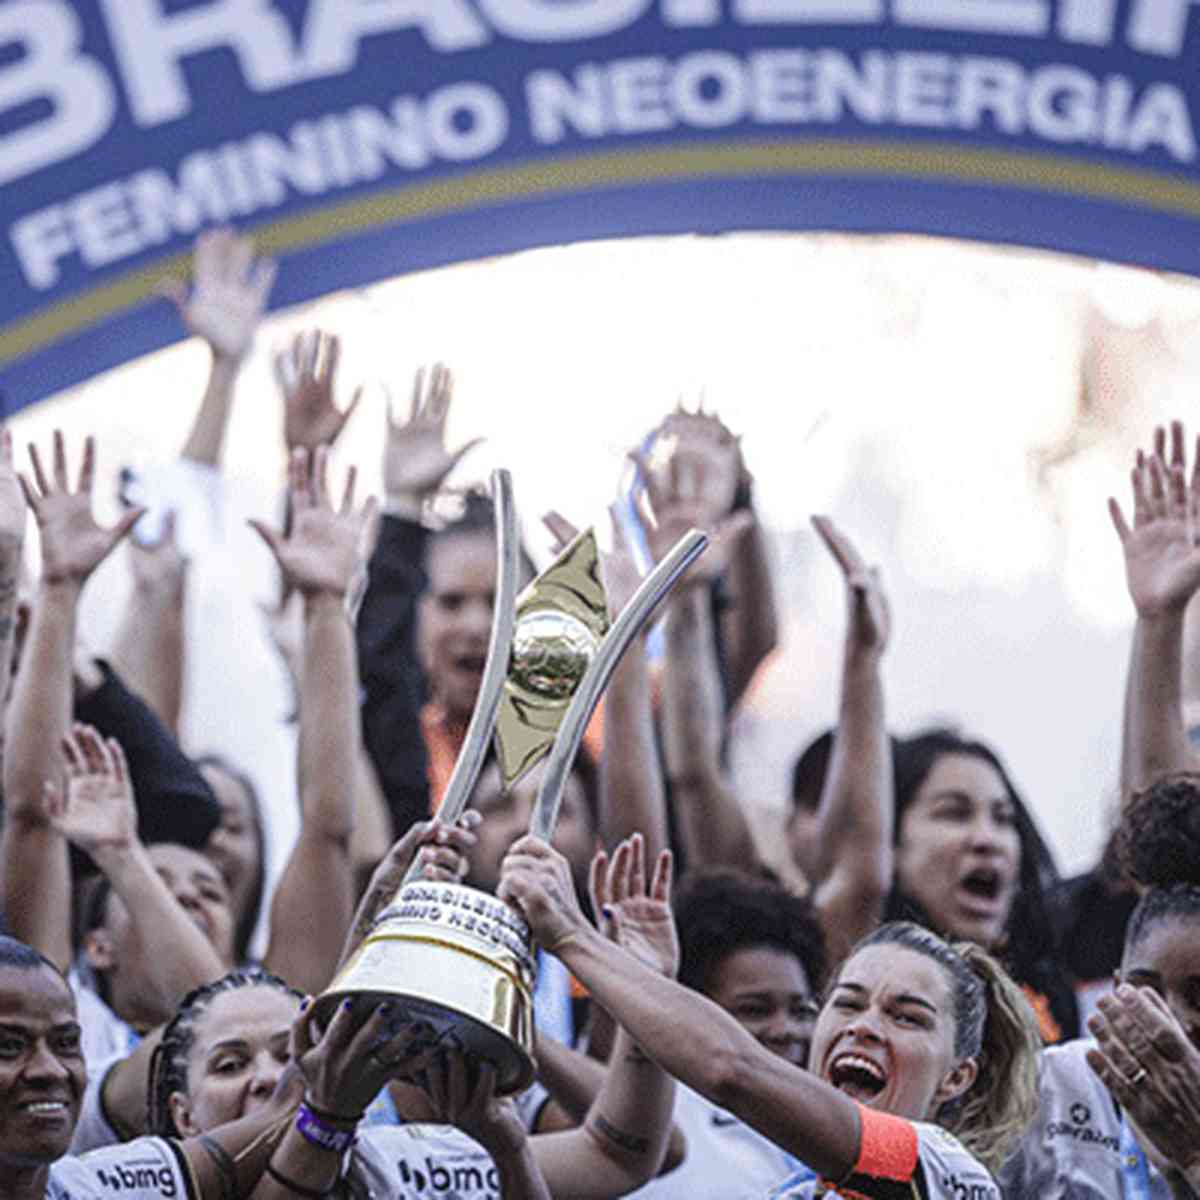 Quais times já foram campeões do Campeonato Paulista de futebol feminino?